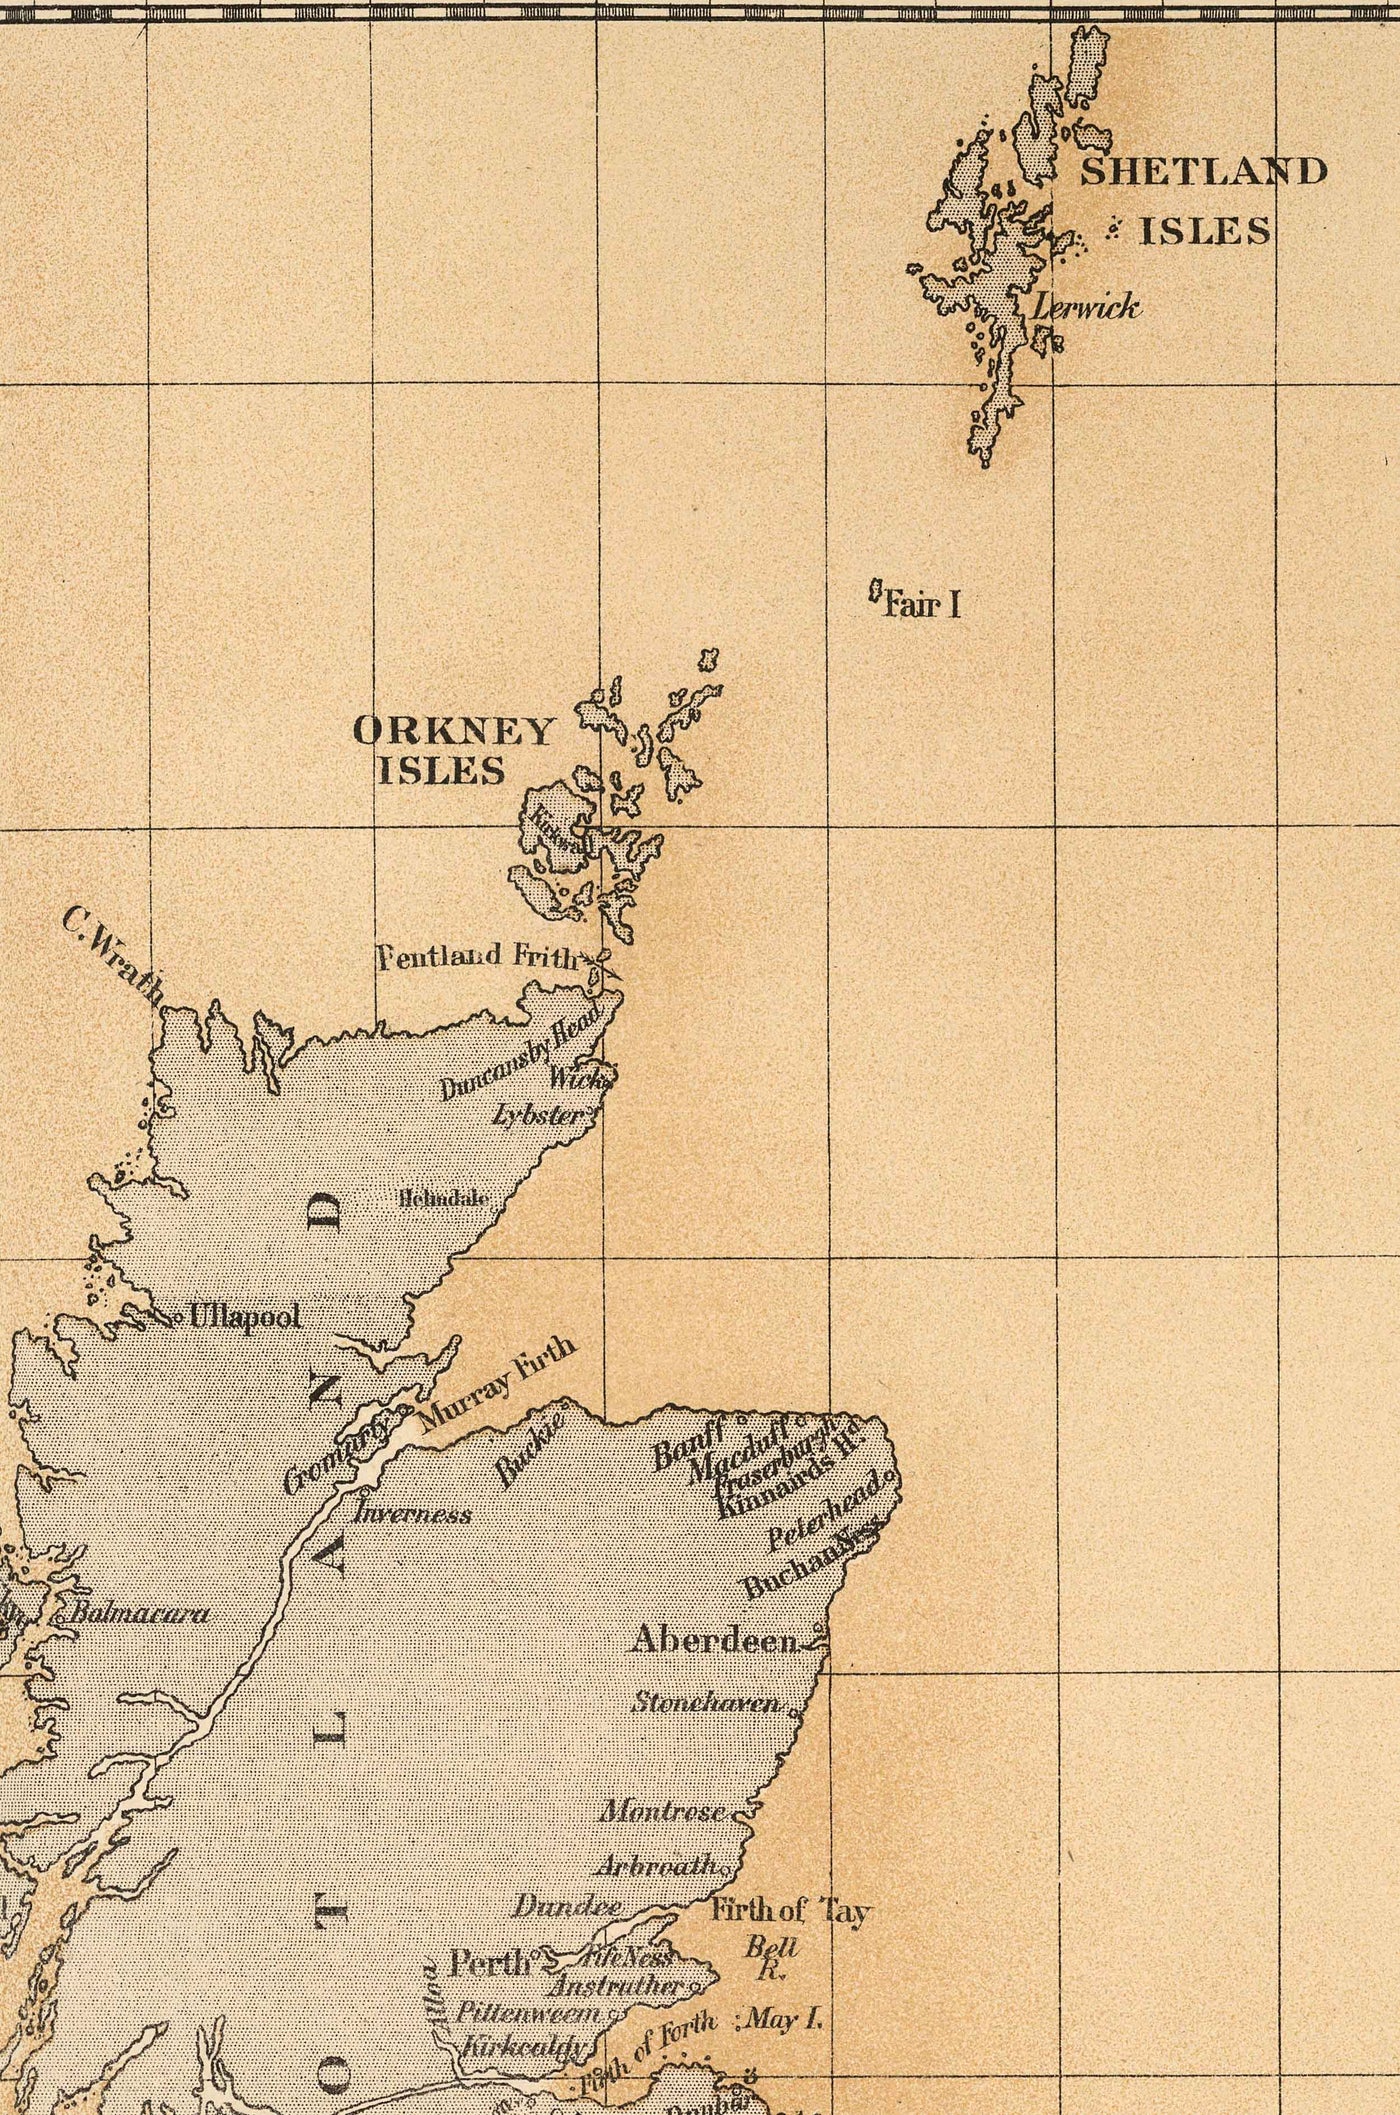 Alte Schellfischkarte der Nordsee, 1883 von O.T. Olsen - Schellfischfang, Verbreitung, Laichzeit, etc.